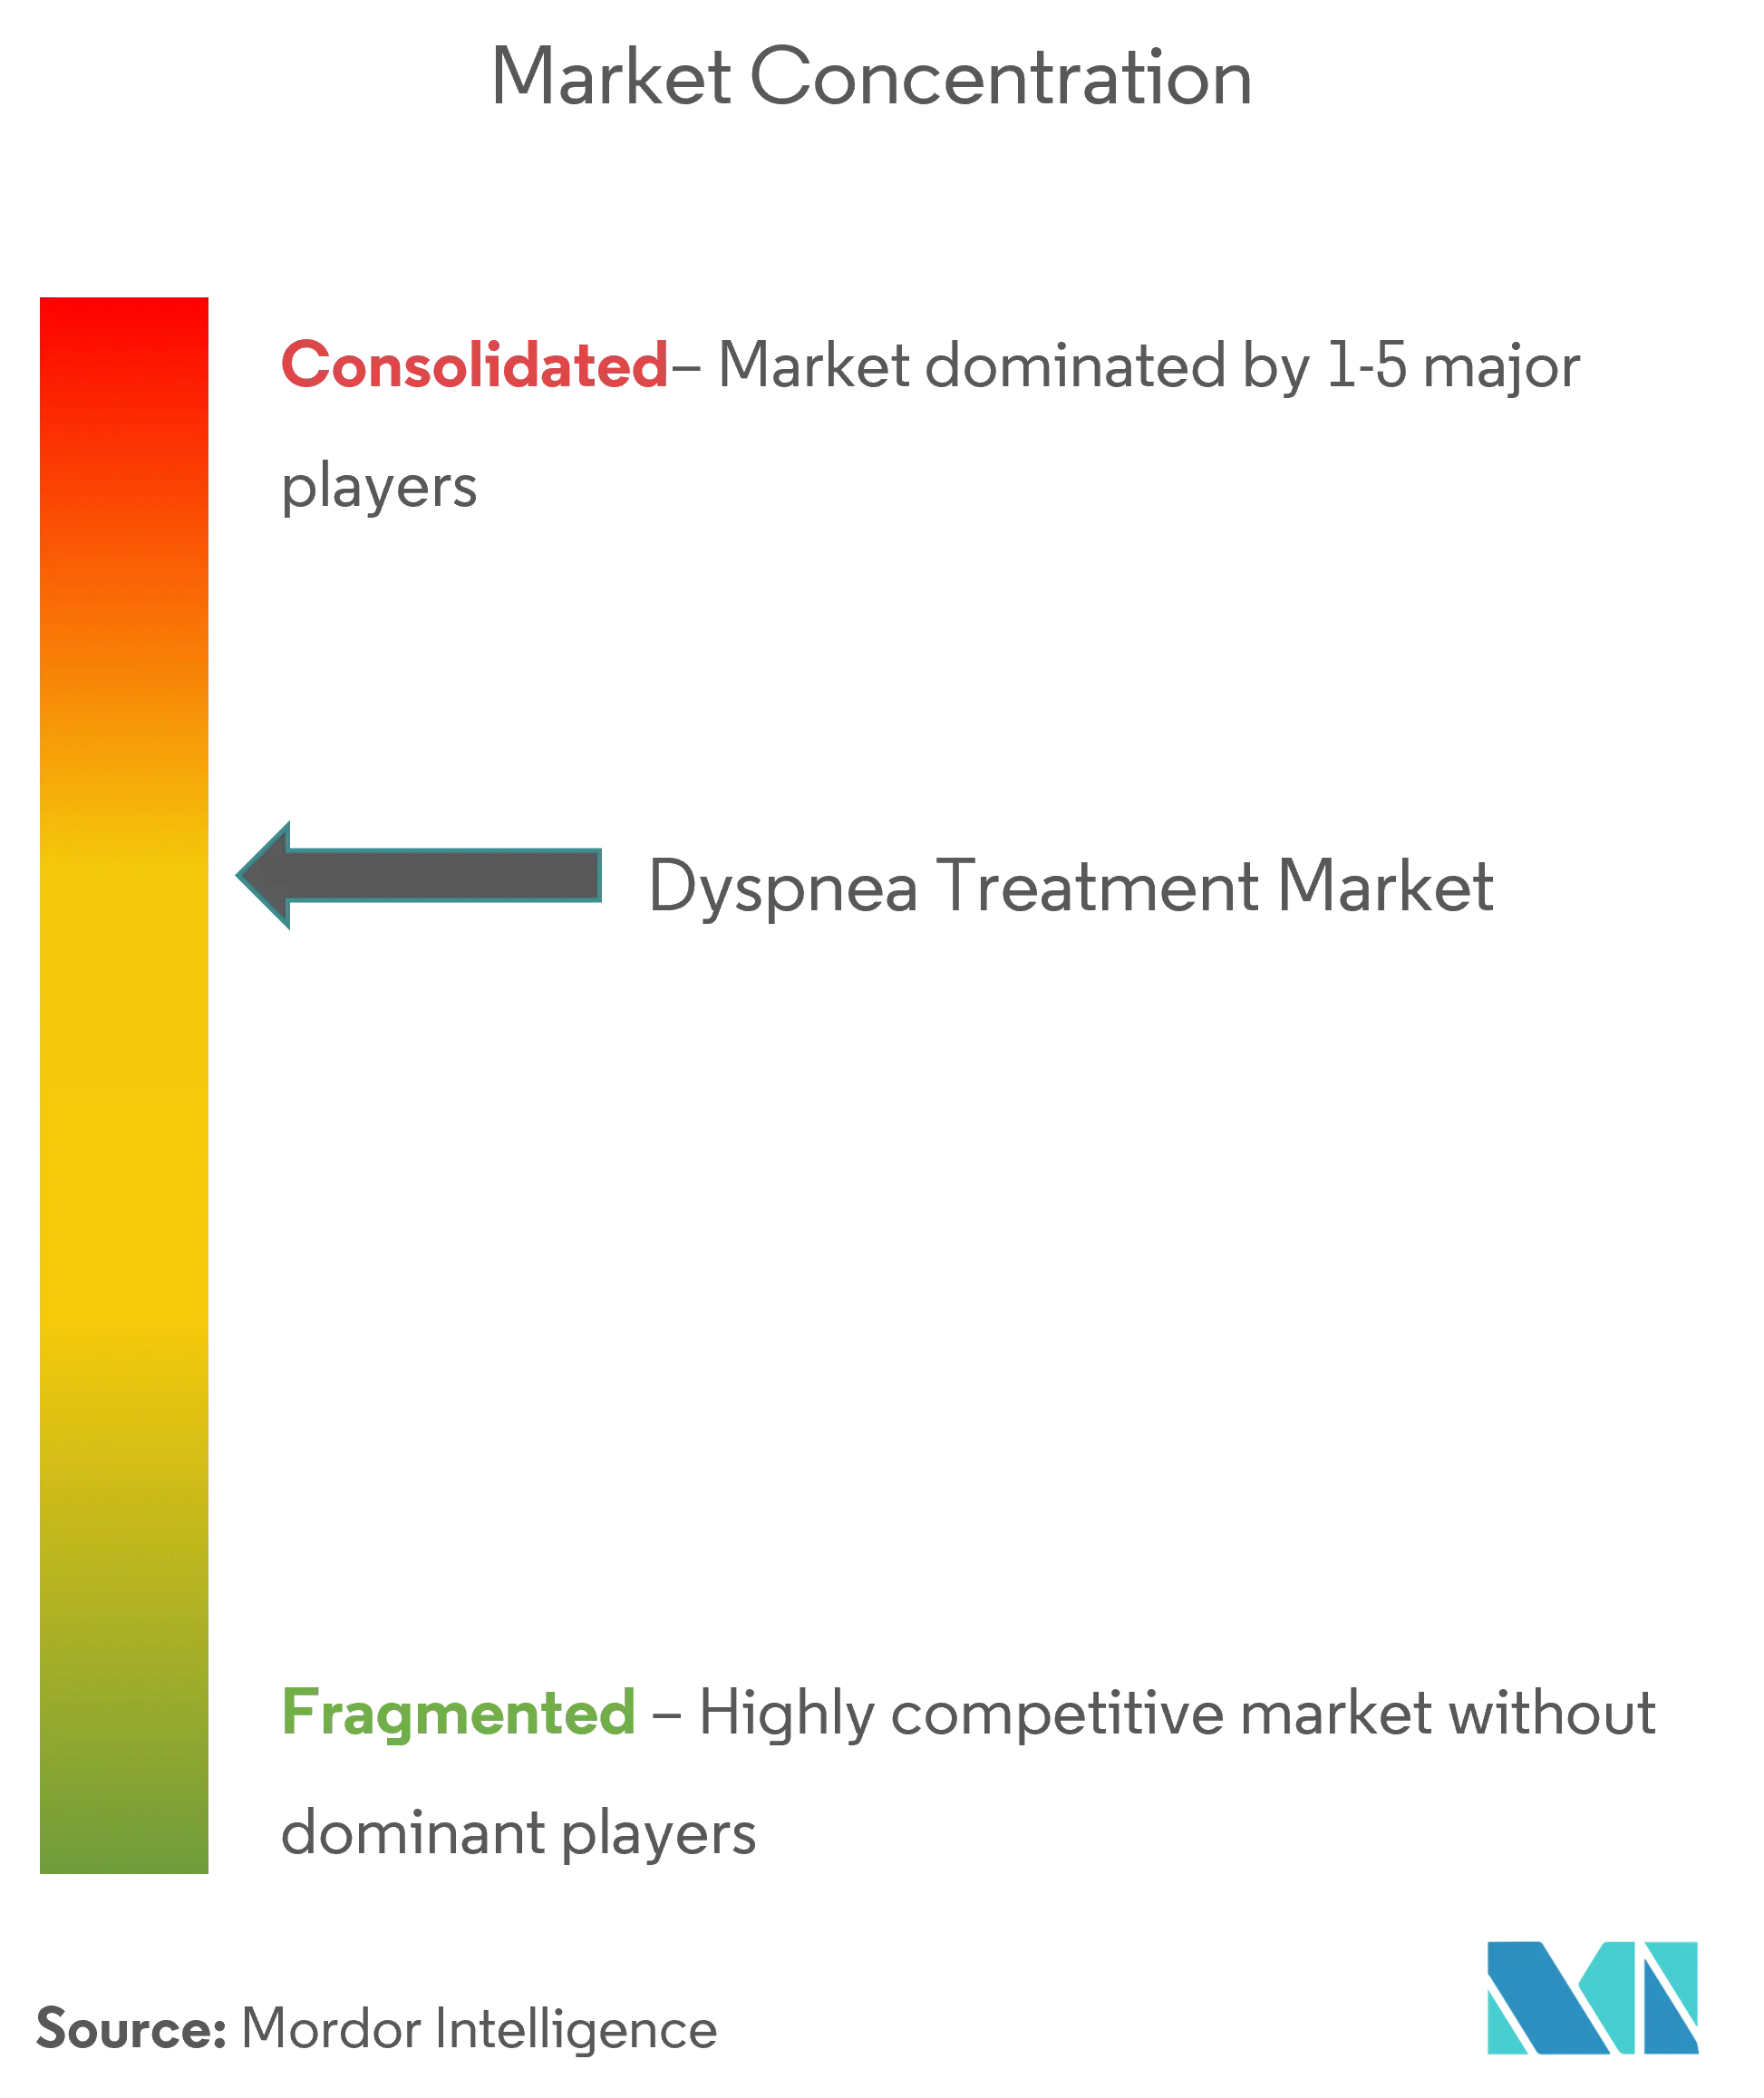 Dyspnea Treatment Market Concentration